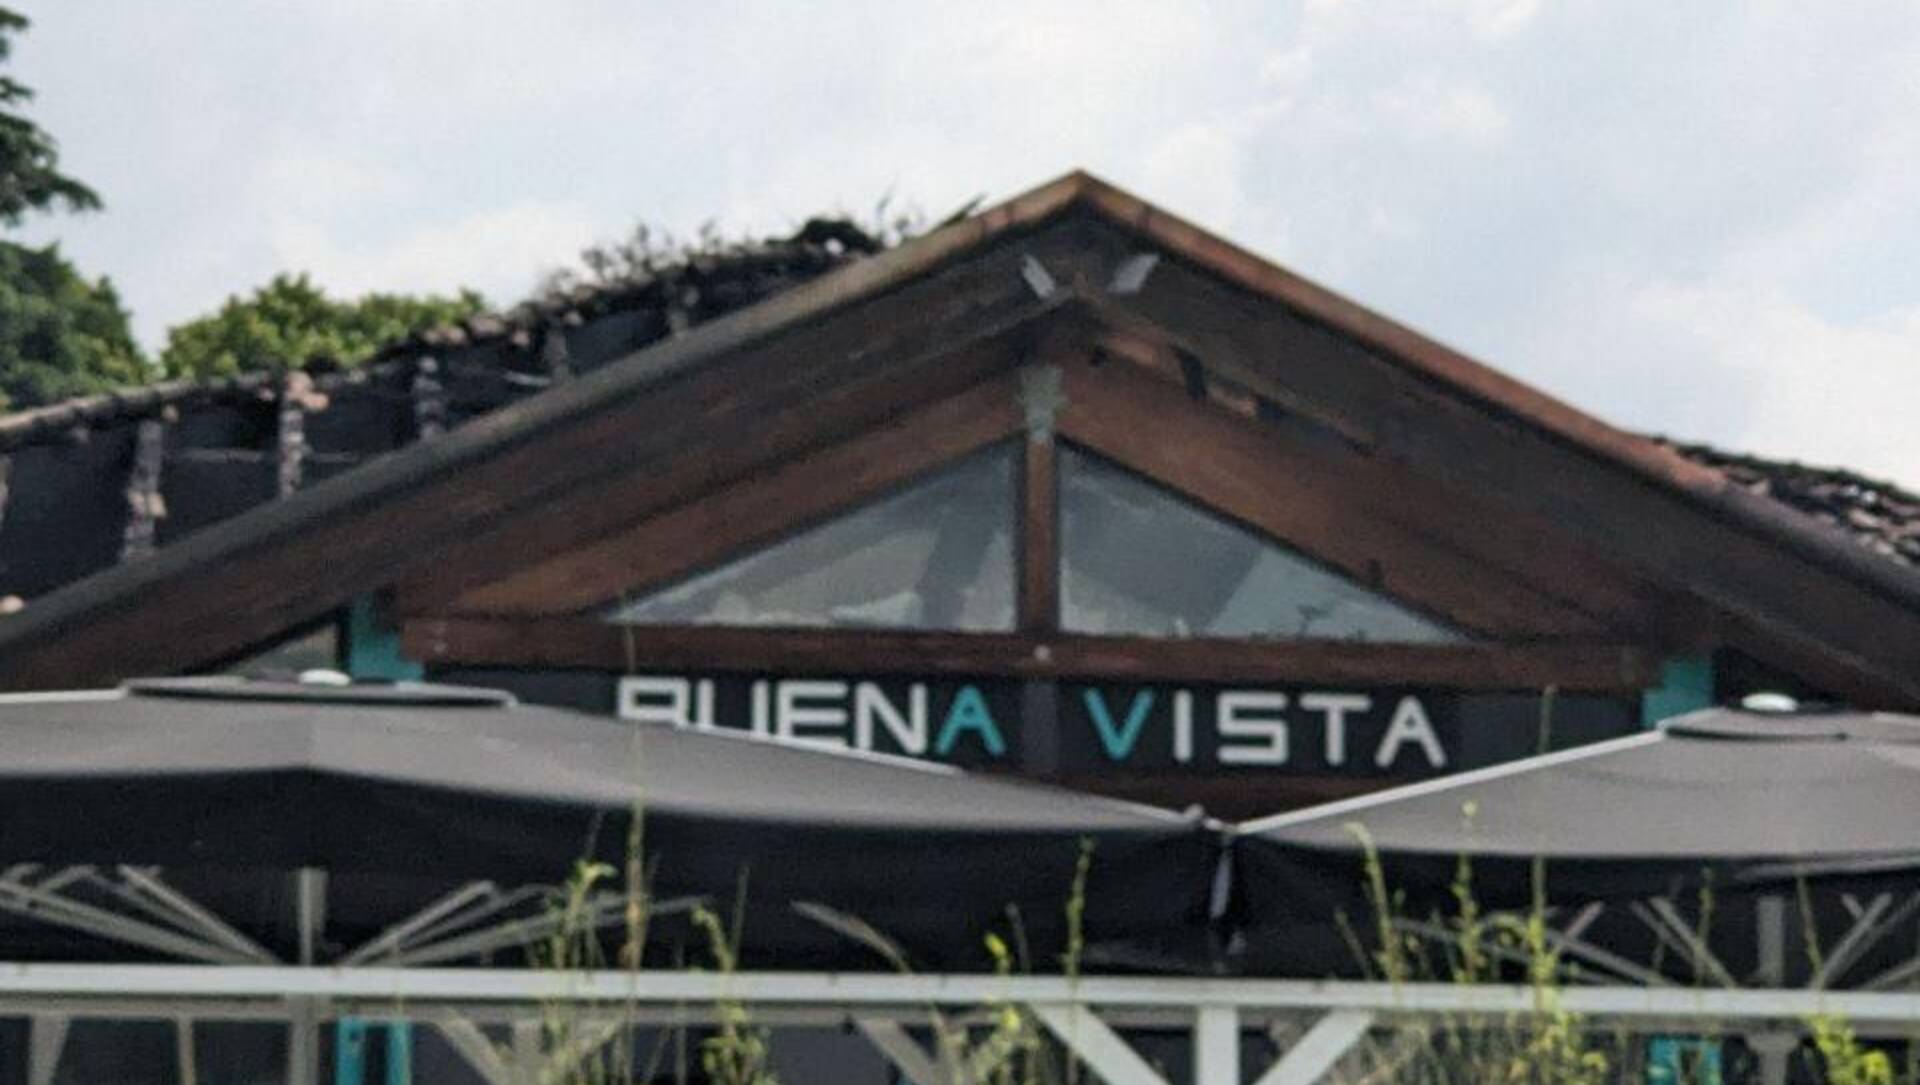 Incendio Buenavista: danni ingenti a tetto e locale, ipotesi cortocircuito come causa delle fiamme